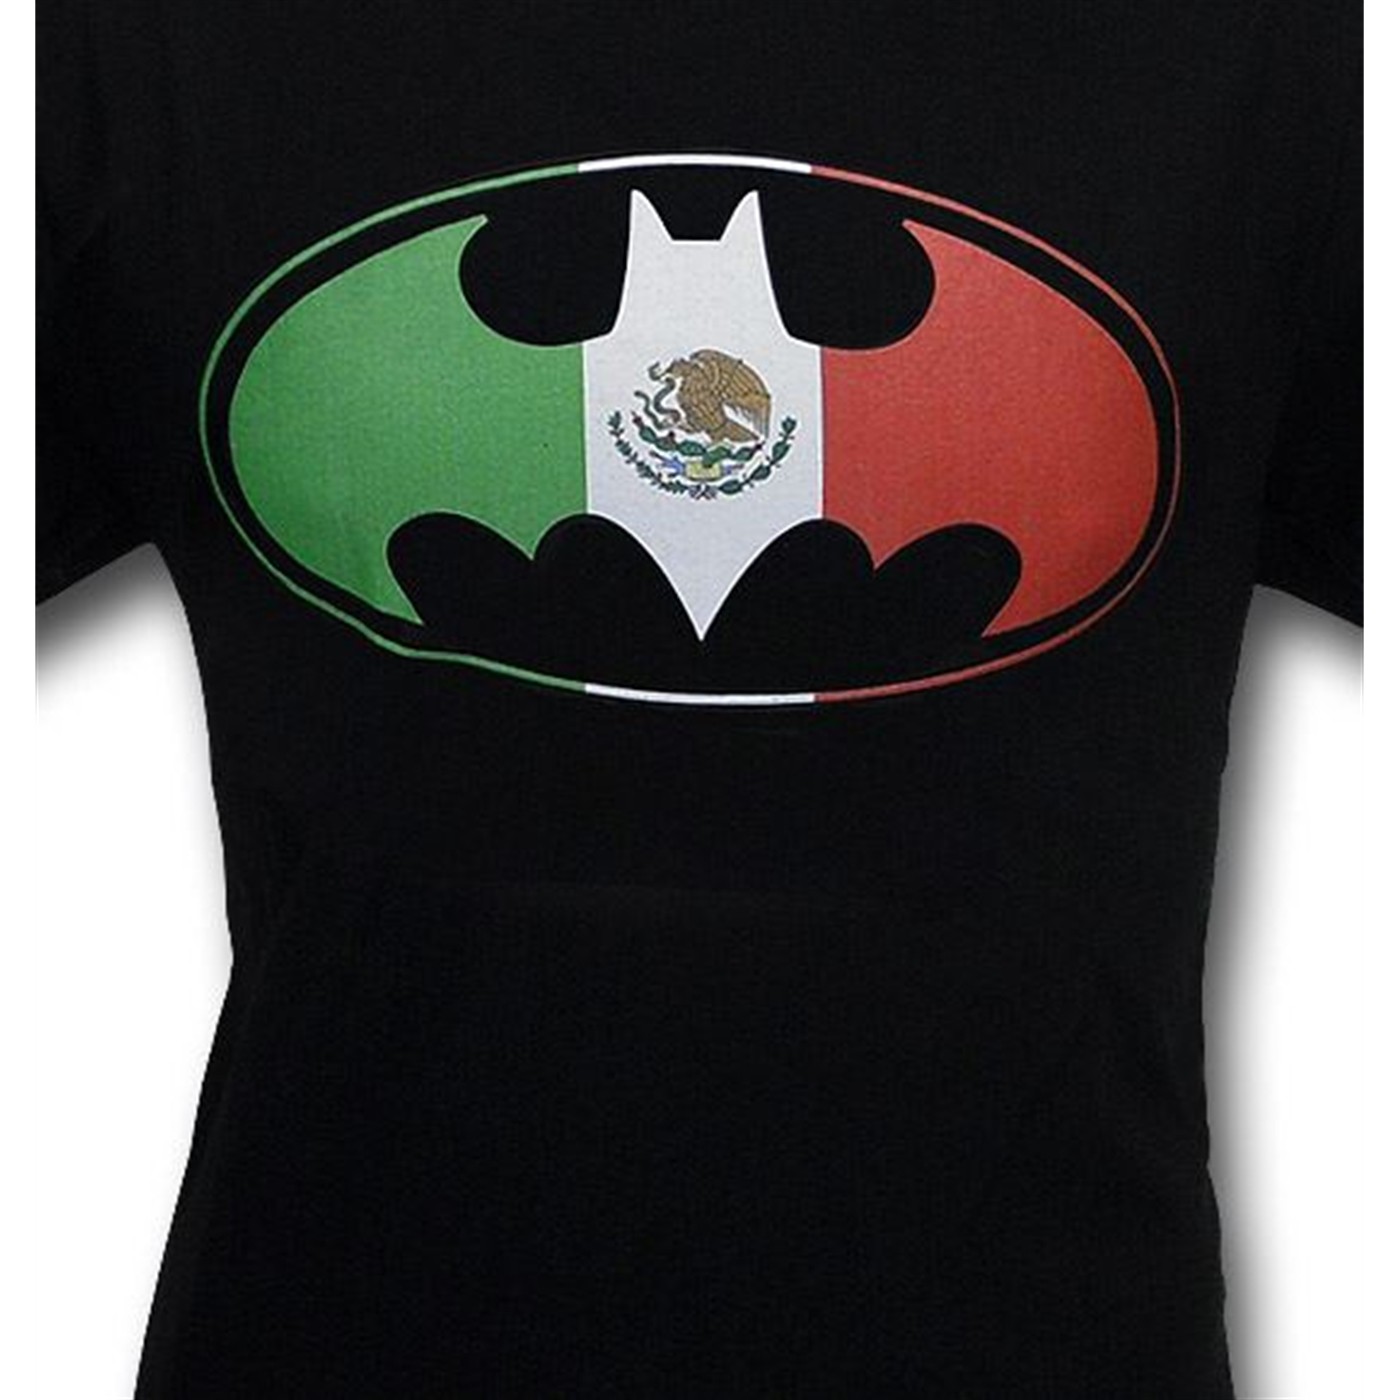 Batman Mexican Flag Symbol T-Shirt